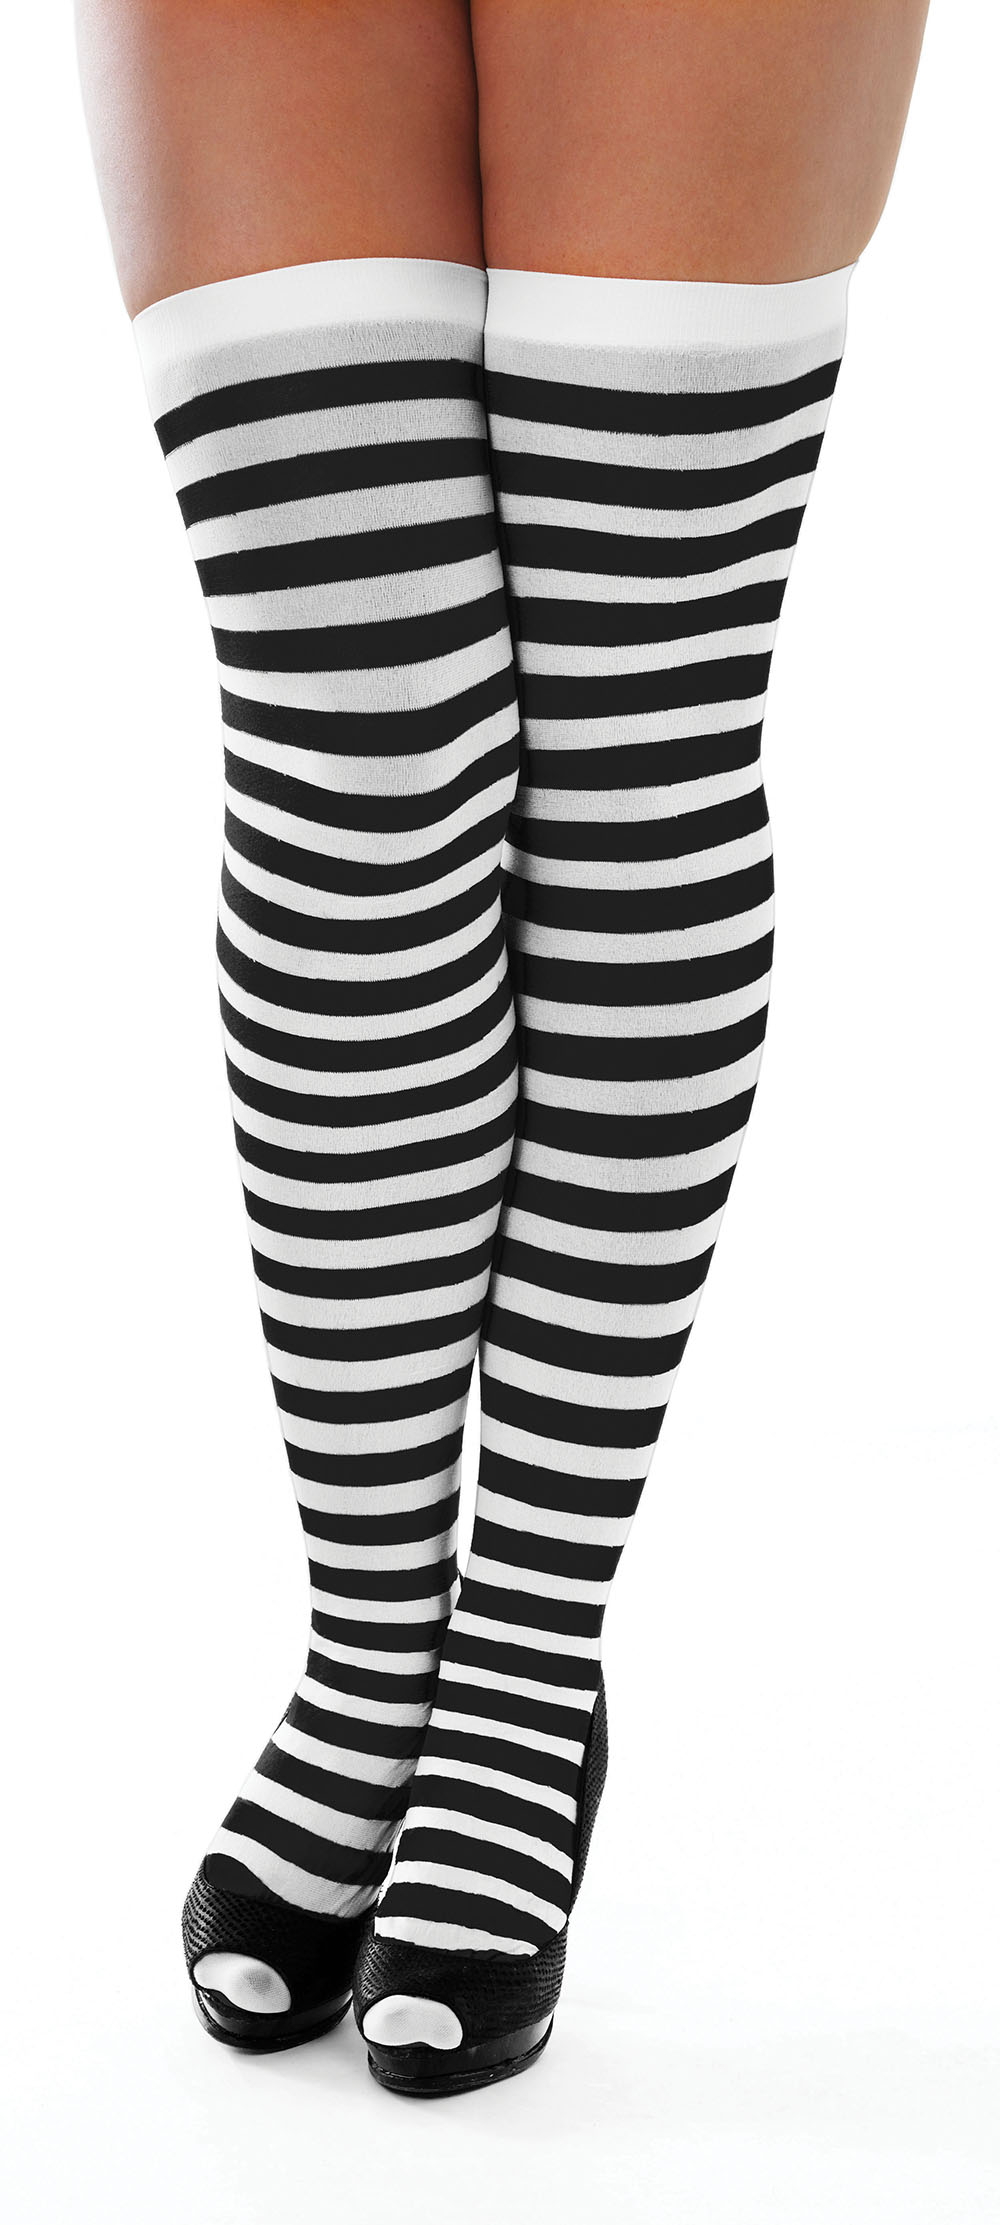 Striped Stockings. Black/White